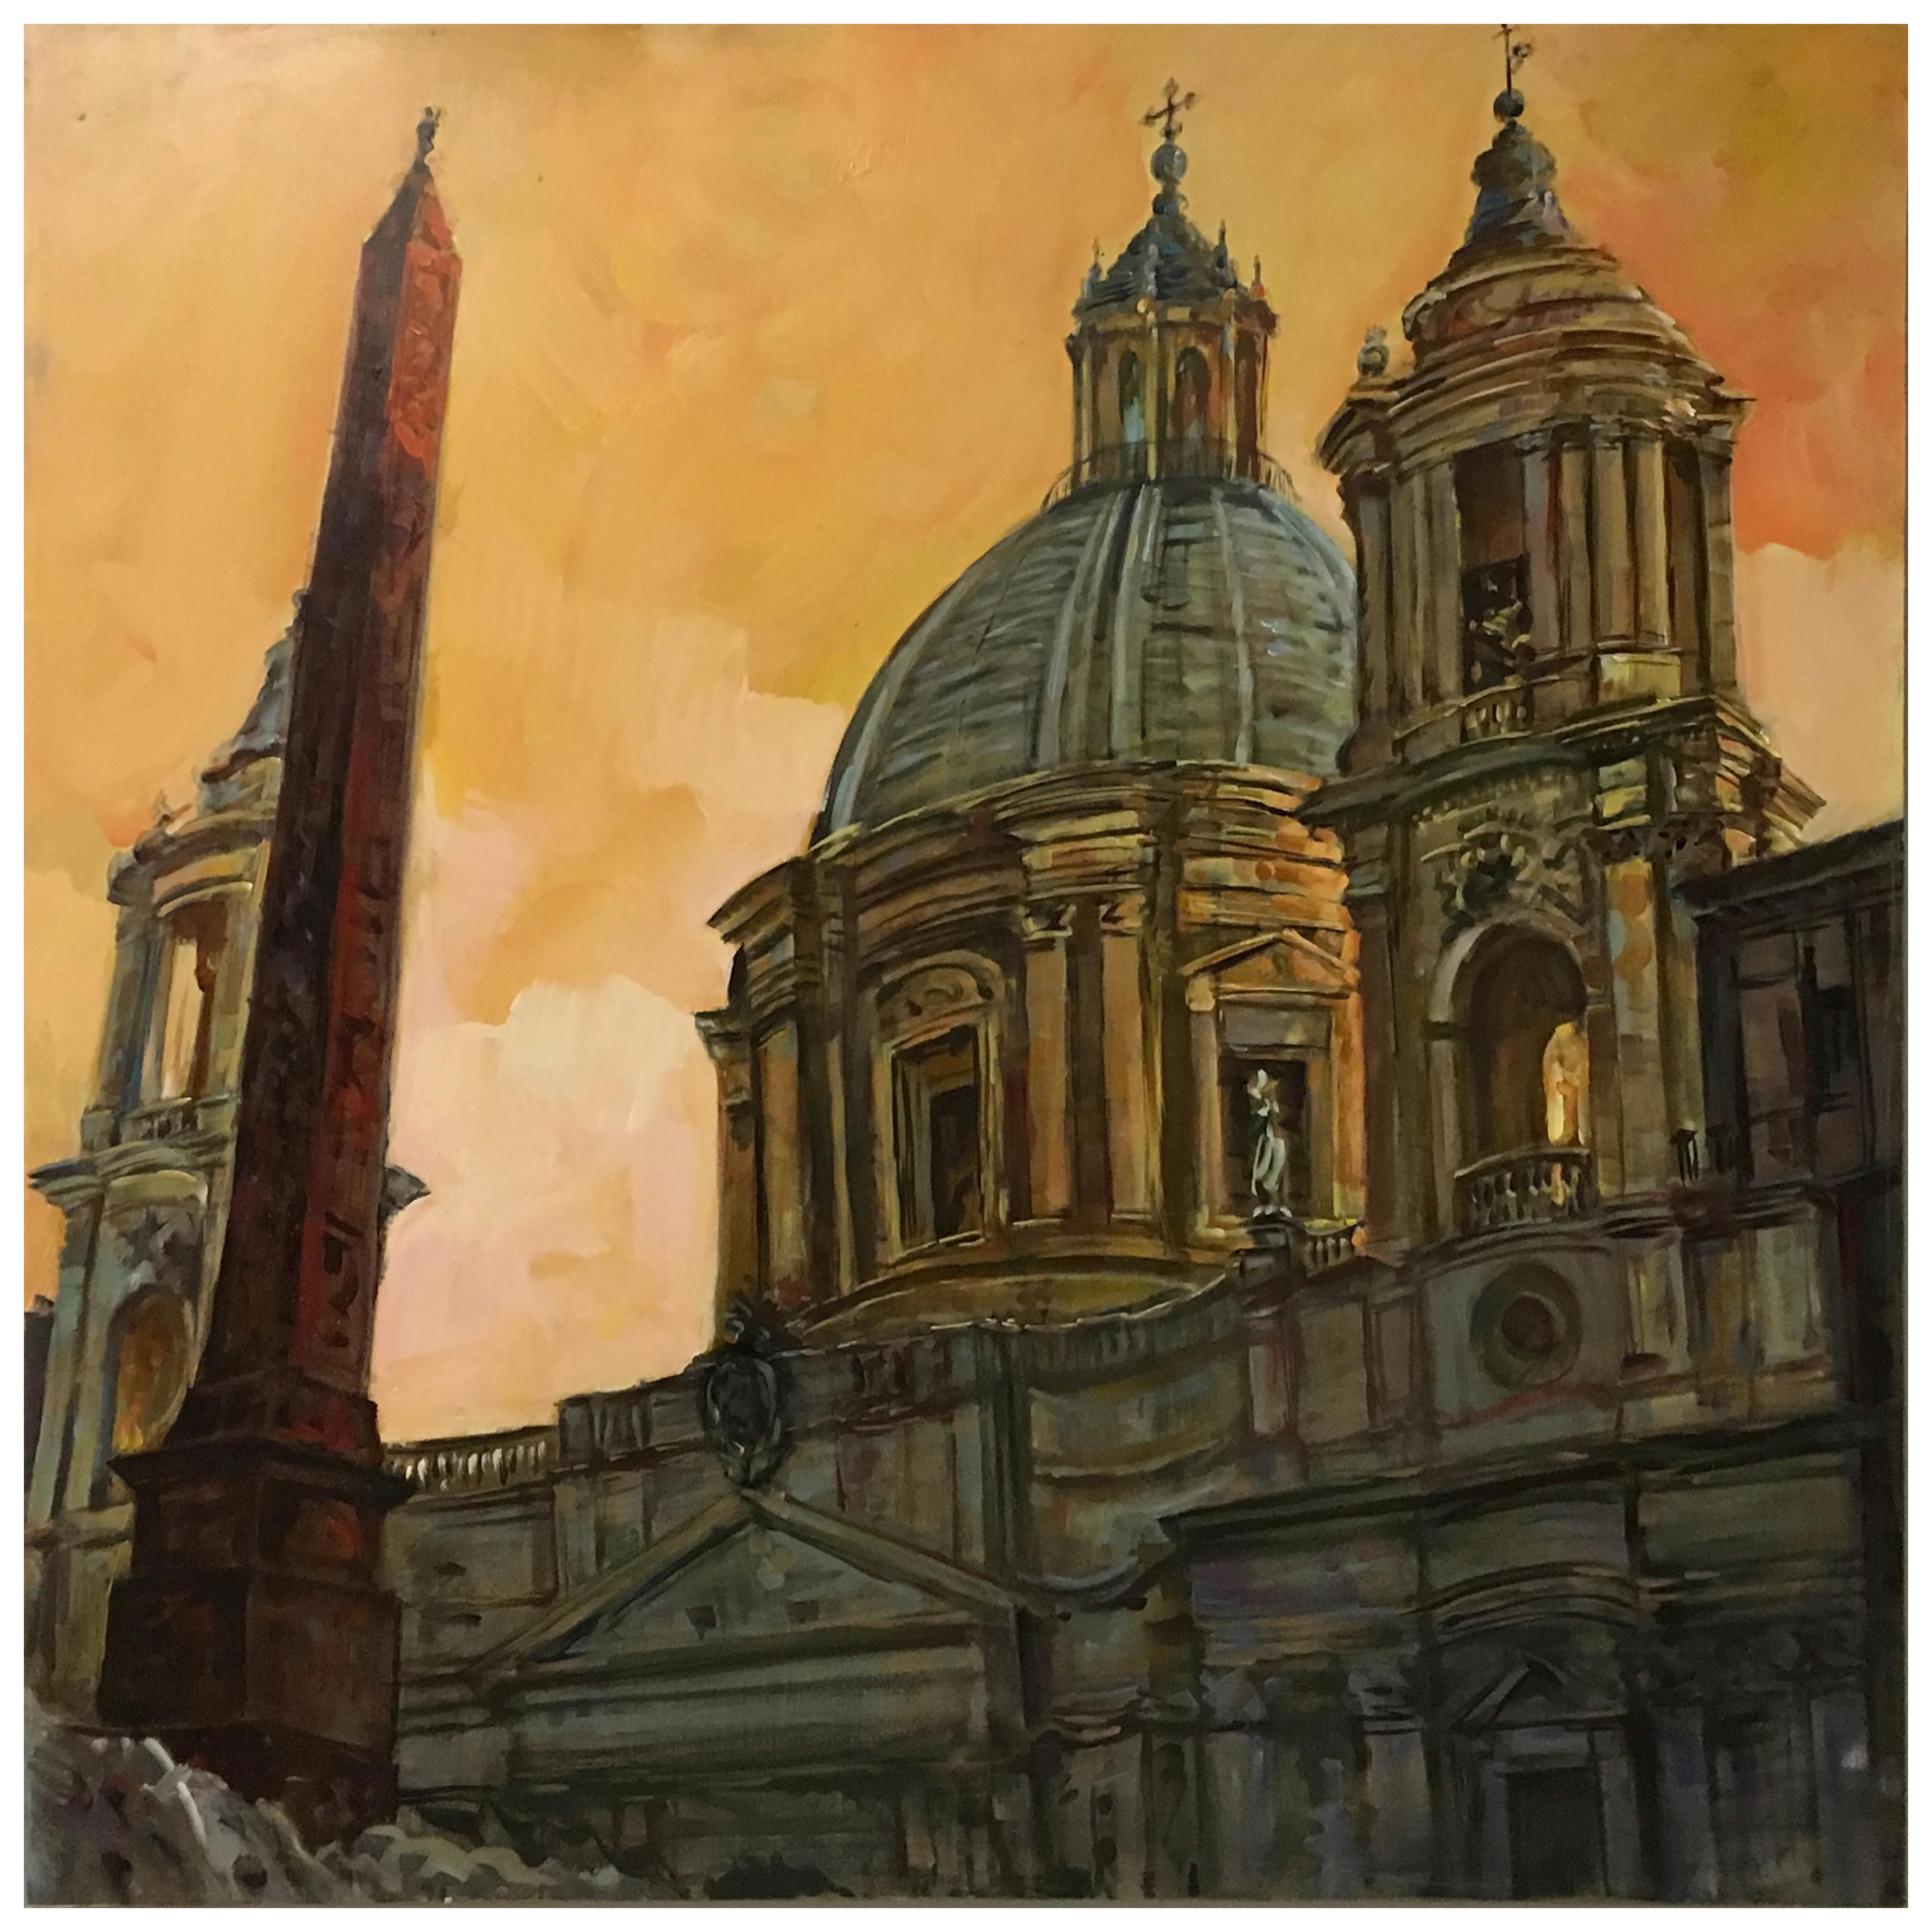 CHURCH'S À ROME -  Peinture italienne à l'huile sur toile cm.100x100, Alfonso Pragliola Italia 2010
